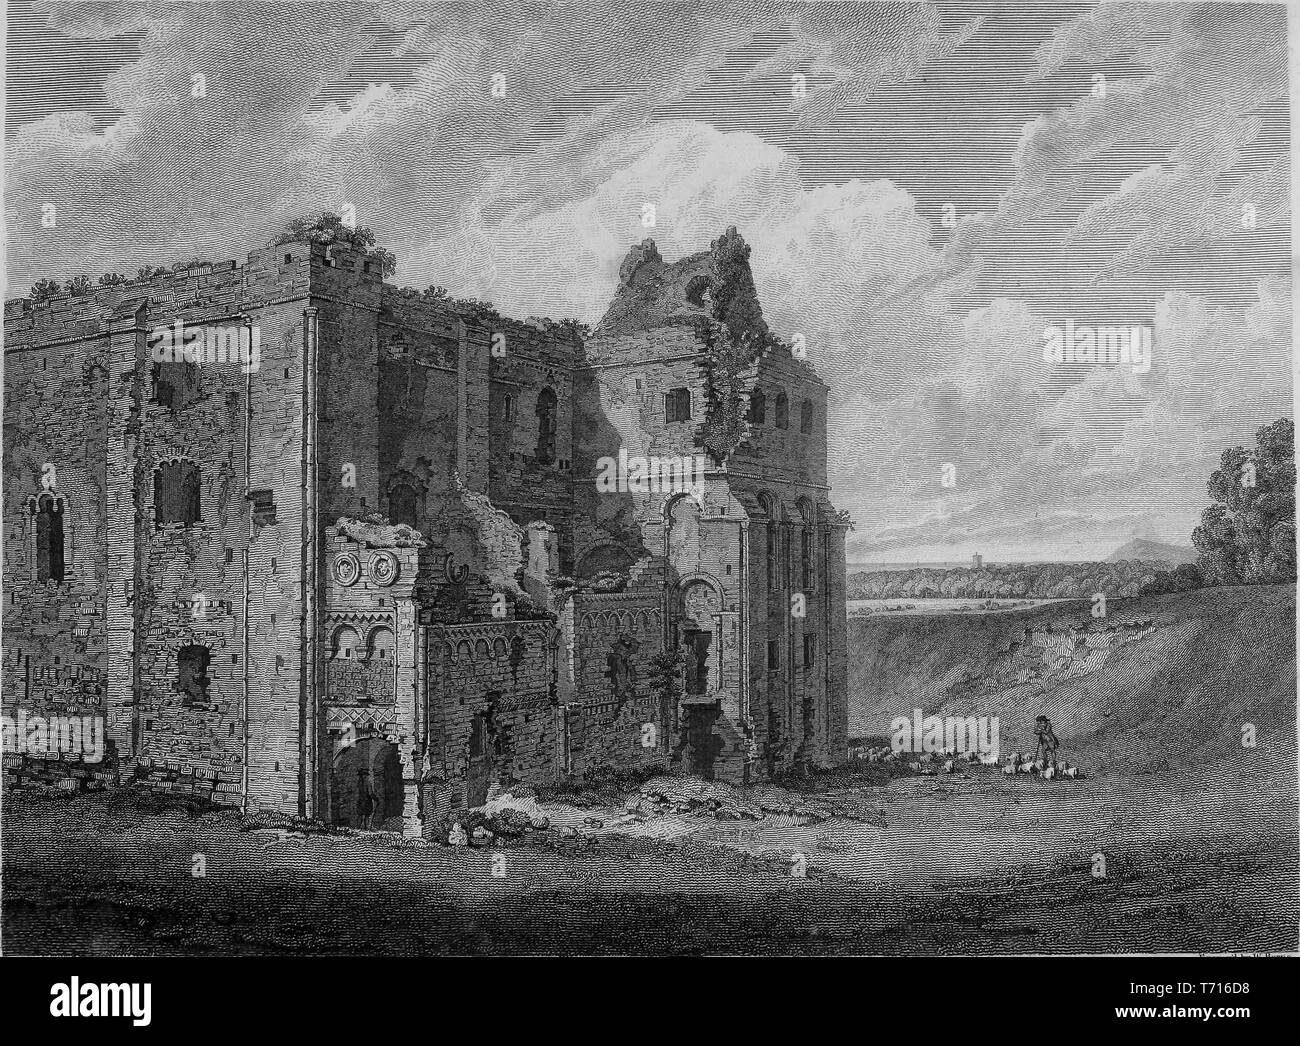 Incisione di rovine di castello in castello Rising, Norfolk, Inghilterra, dal libro "Antichità di Gran Bretagna' da William Byrne e Thomas Hearne, 1825. La cortesia Internet Archive. () Foto Stock